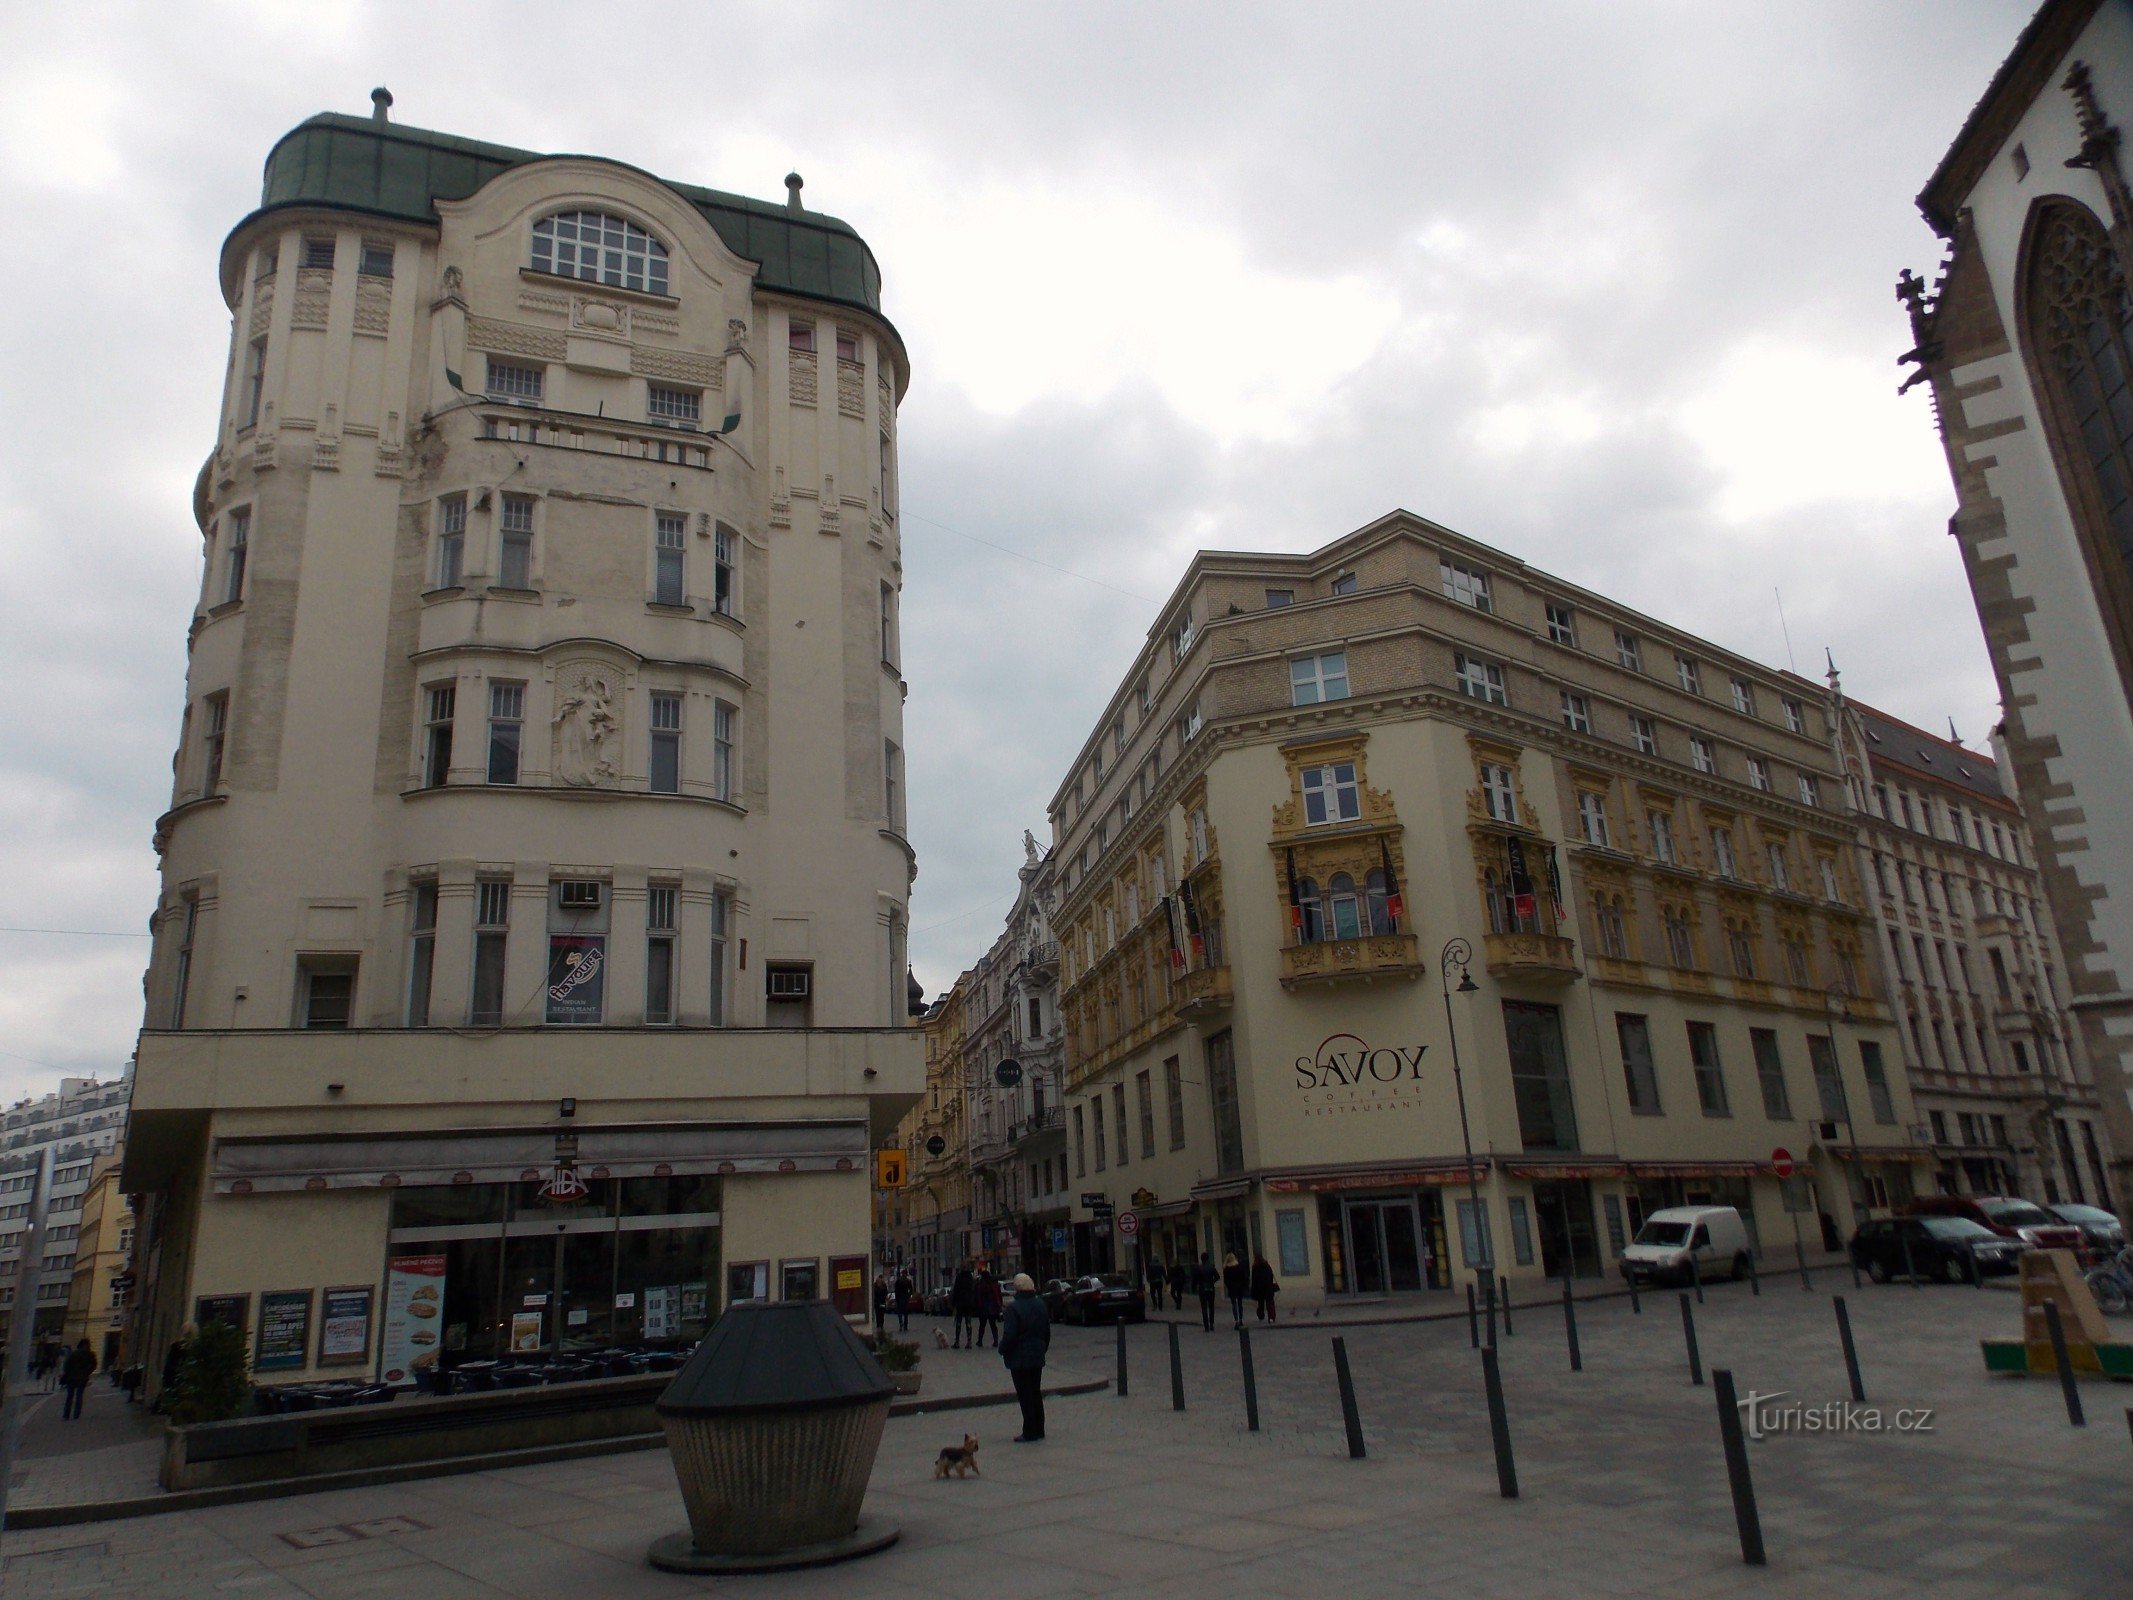 Peste Jakubské náměstí în Brno